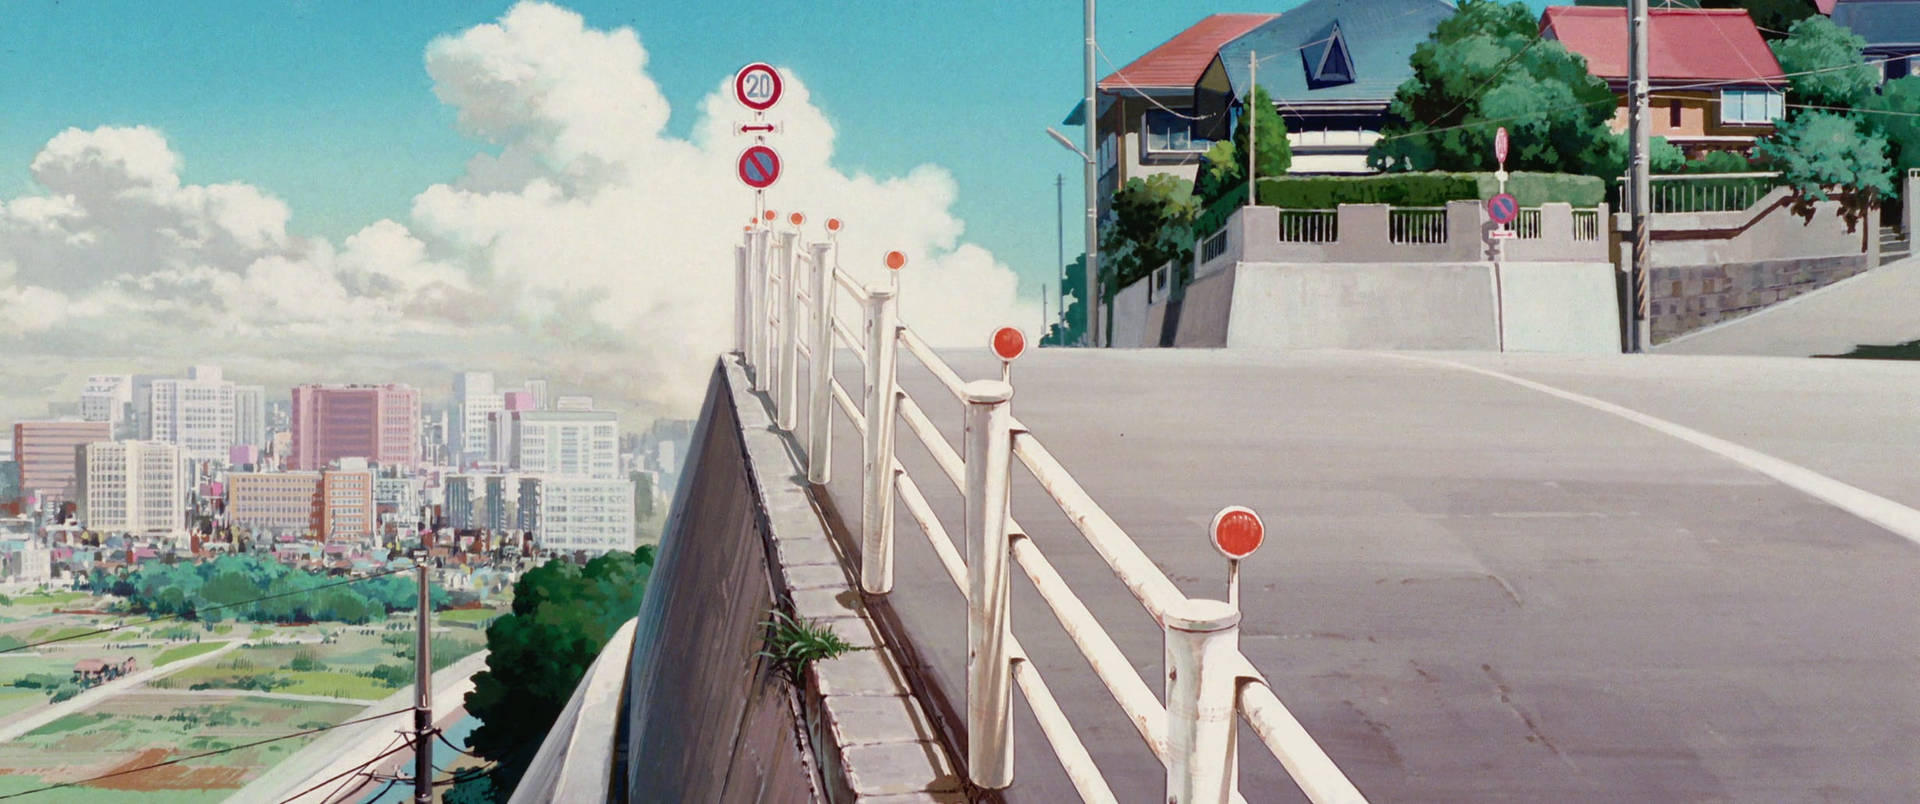 Studio Ghibli Scenery Town Street Residential Houses Wallpaper